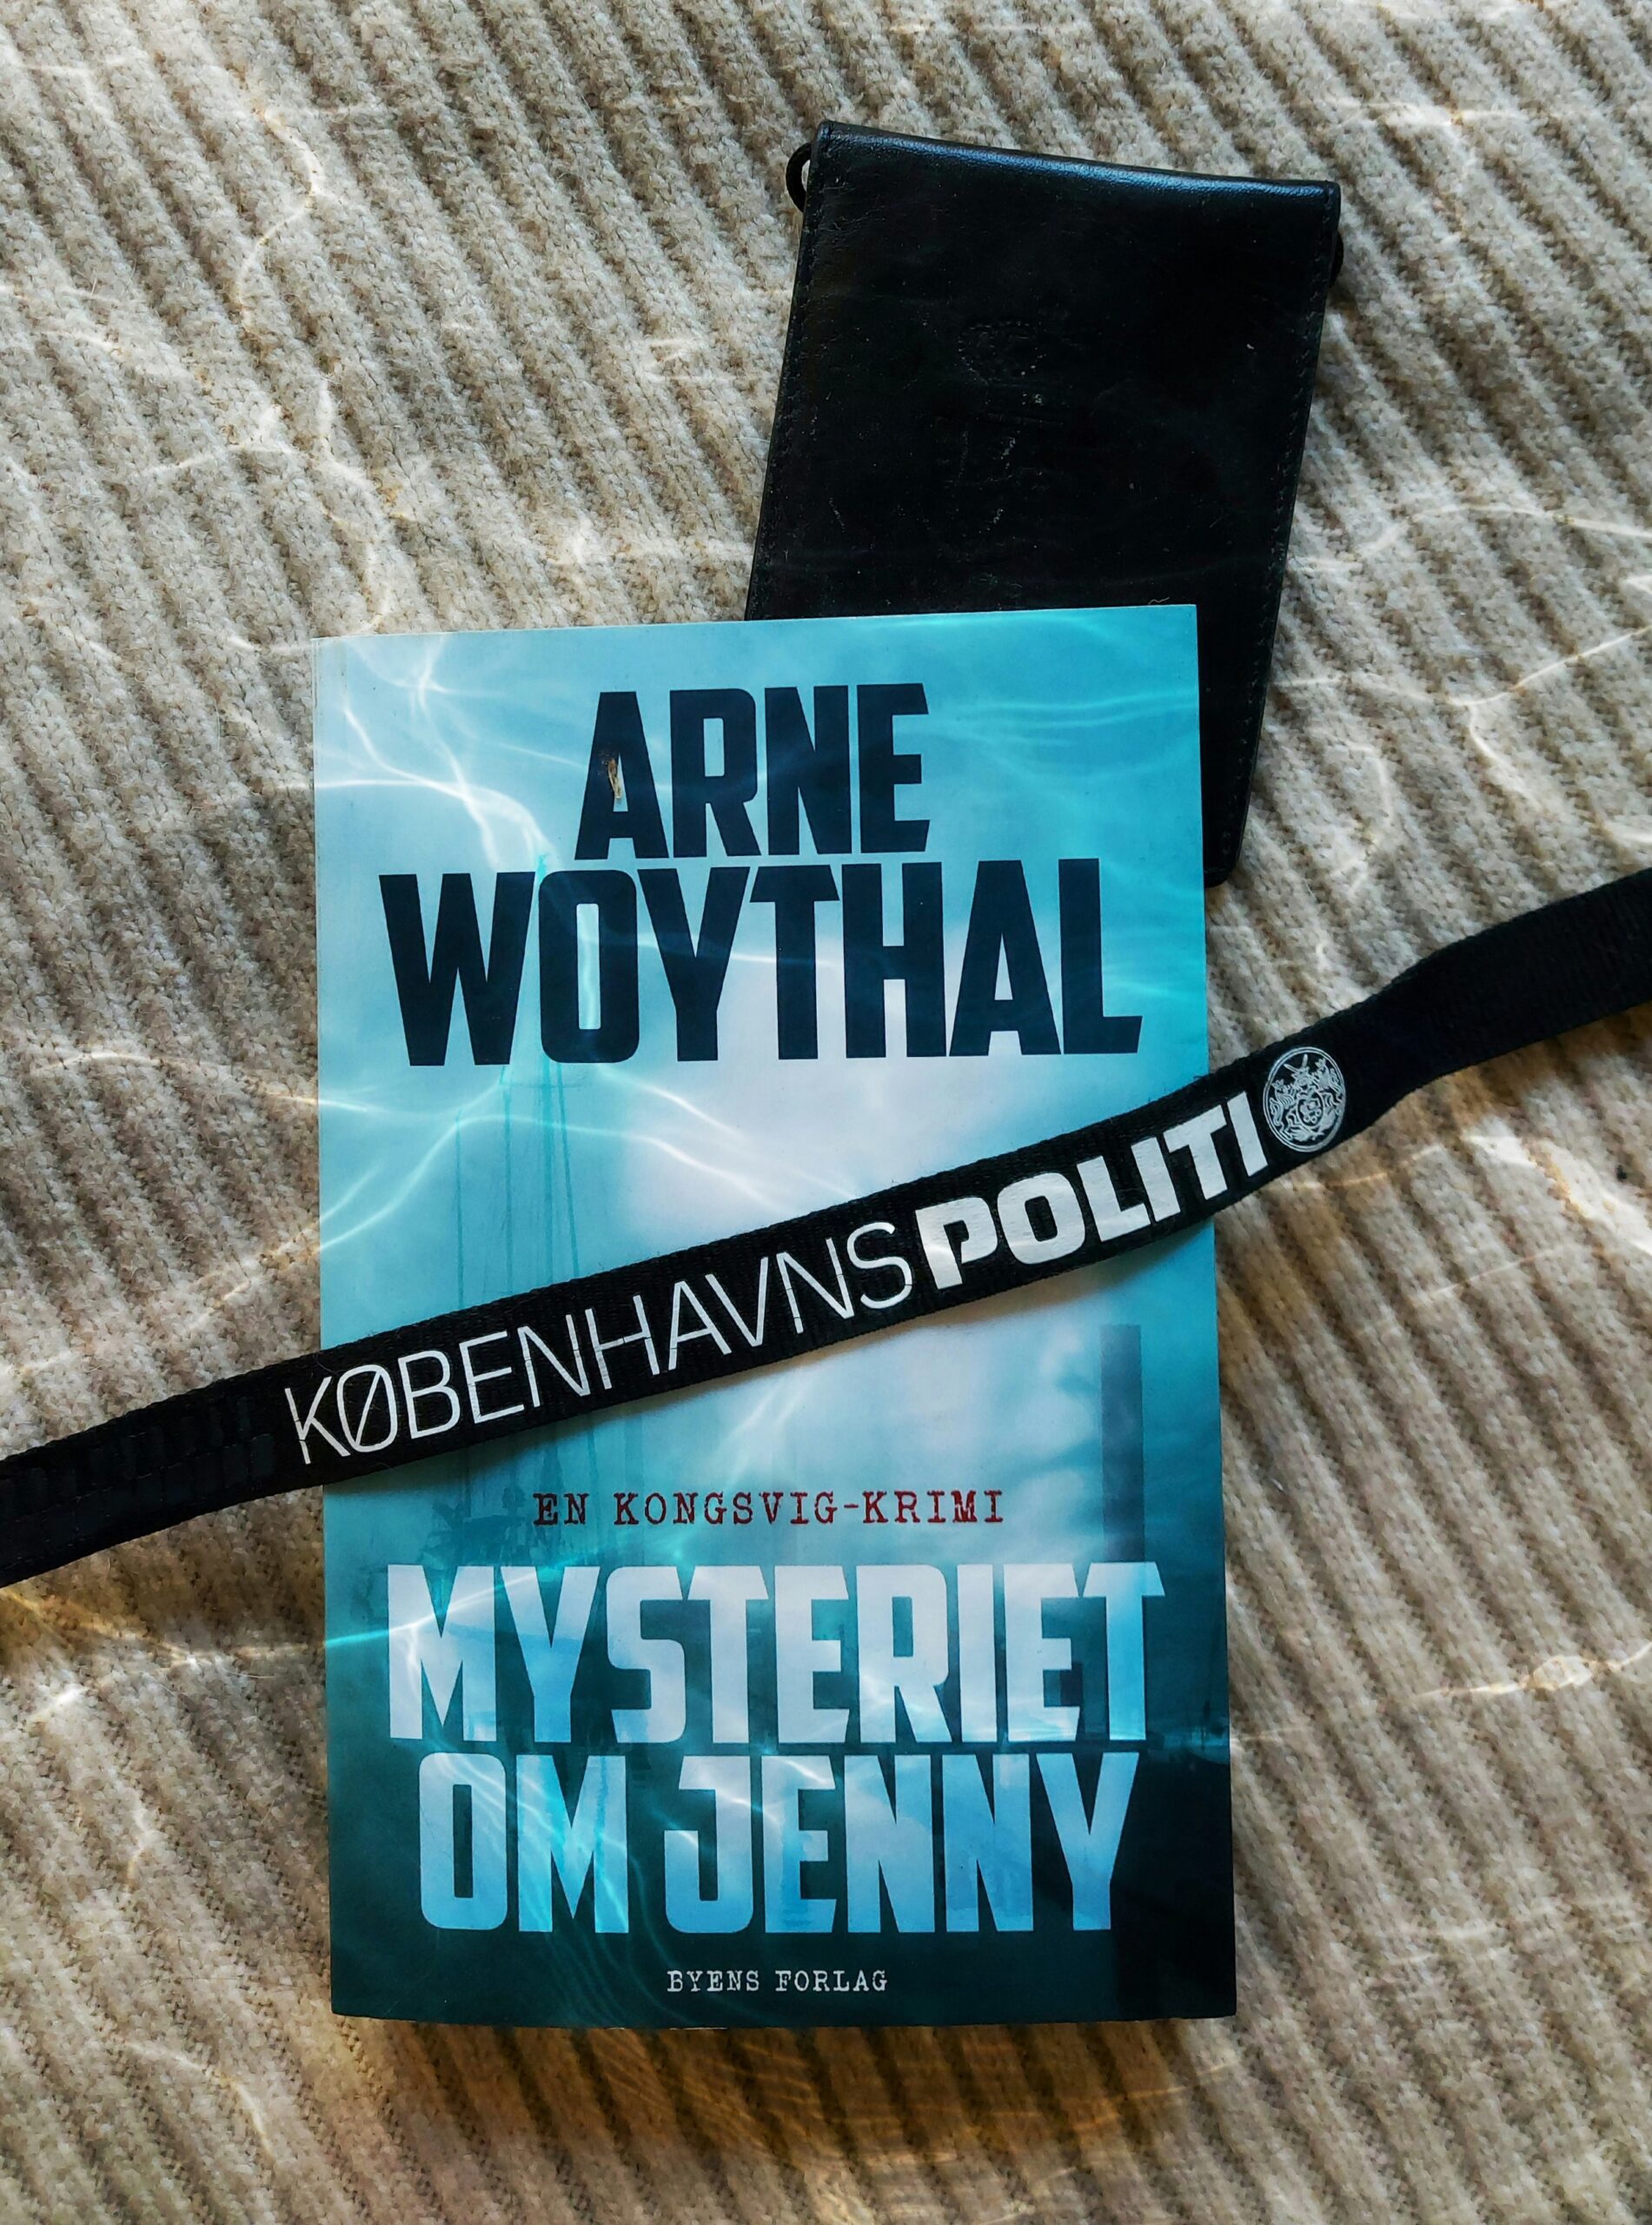 Mysteriet om Jenny af Arne Woythal (Kongsvig #1)